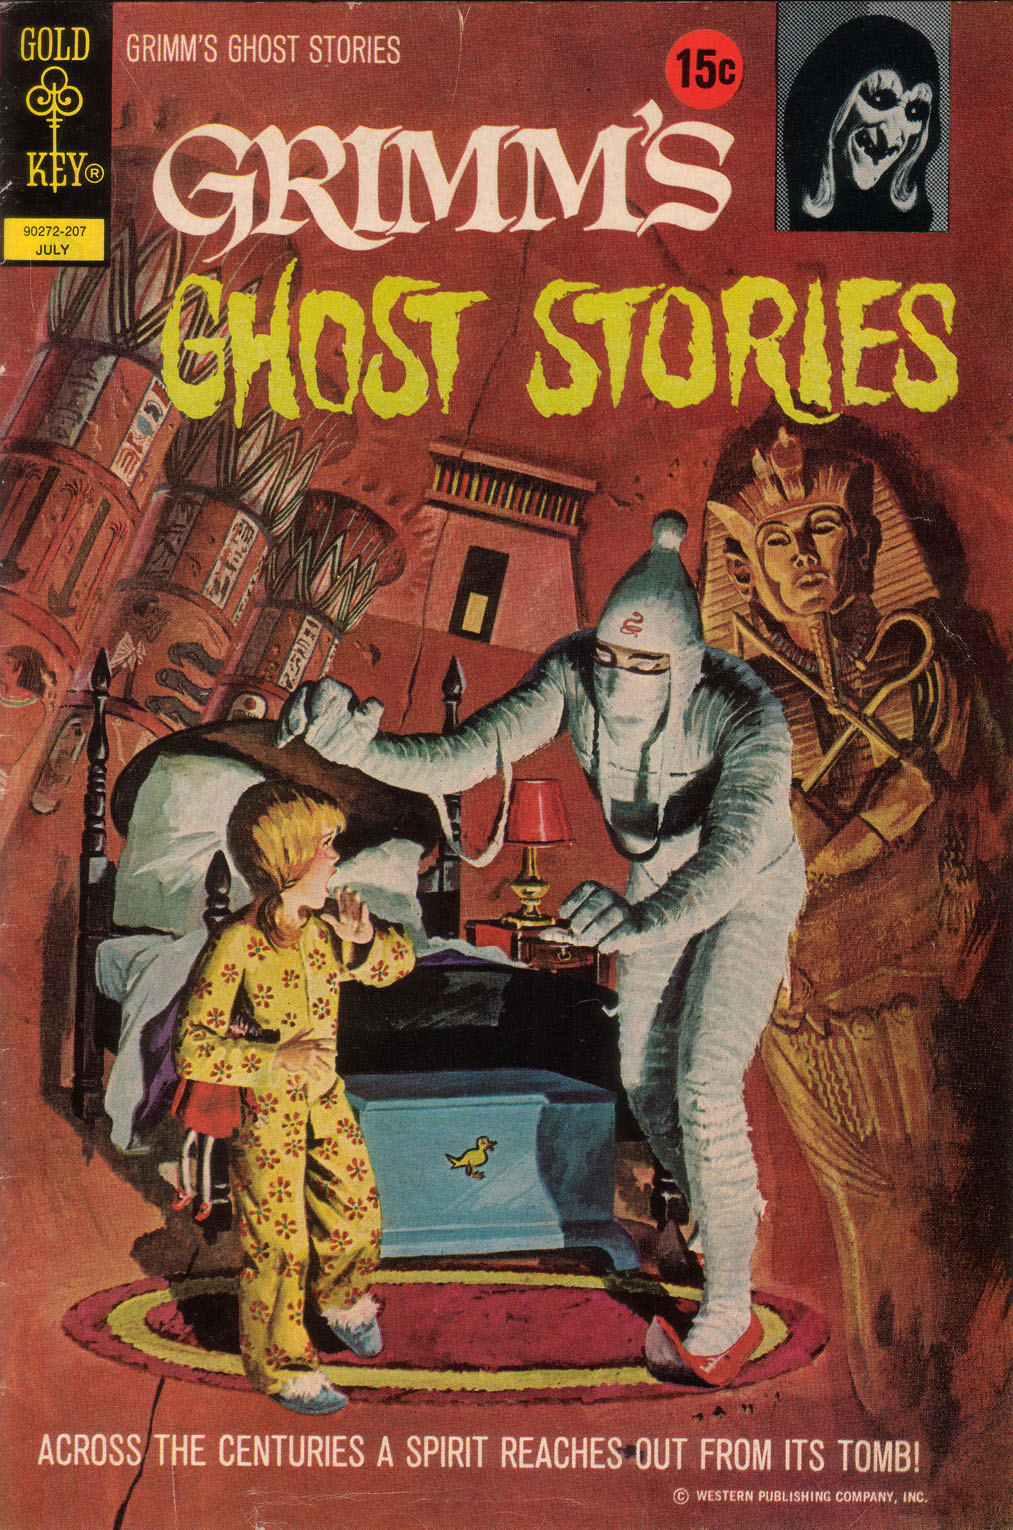 Grimm's Ghost Stories Art